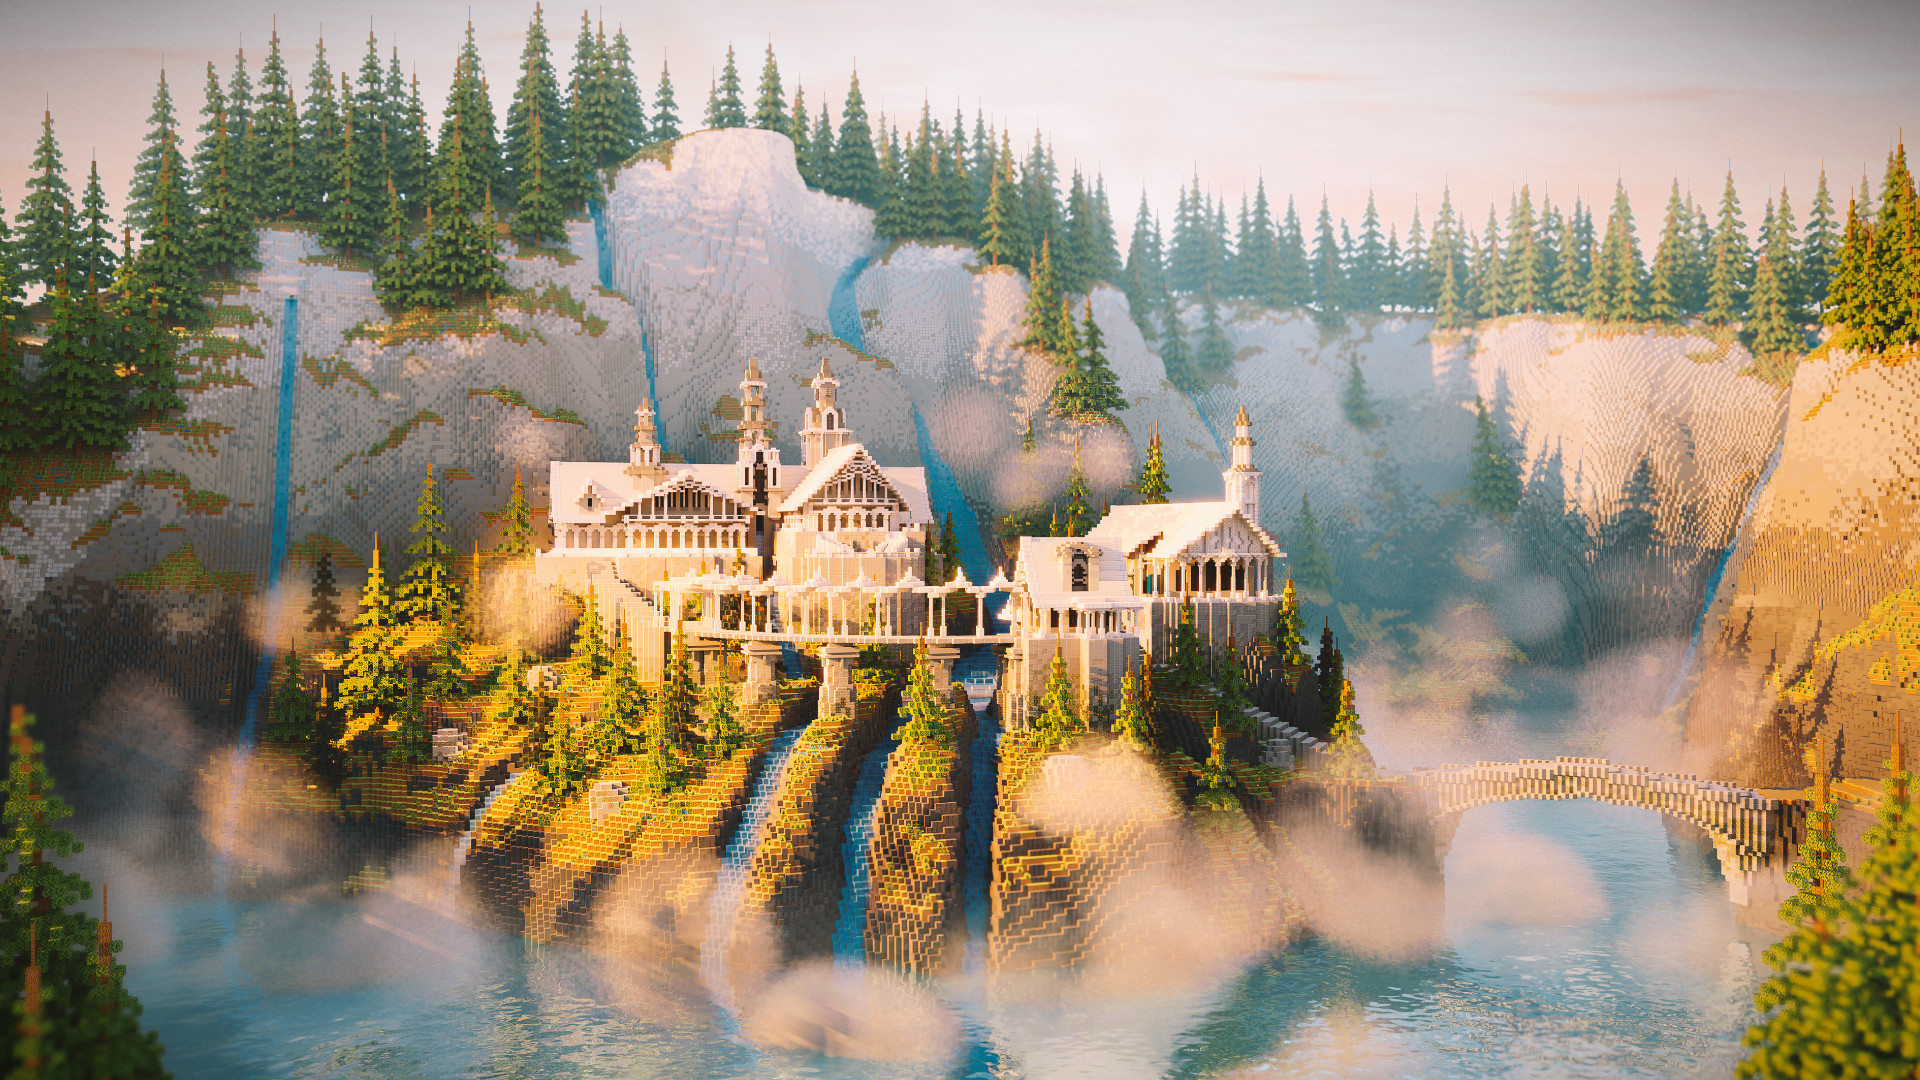 Minecraft ကစားသမားသည် Lord of the Rings မှ Rivendell ကို ရက်သတ္တပတ်များစွာကြာအောင် ဖန်တီးသည်။